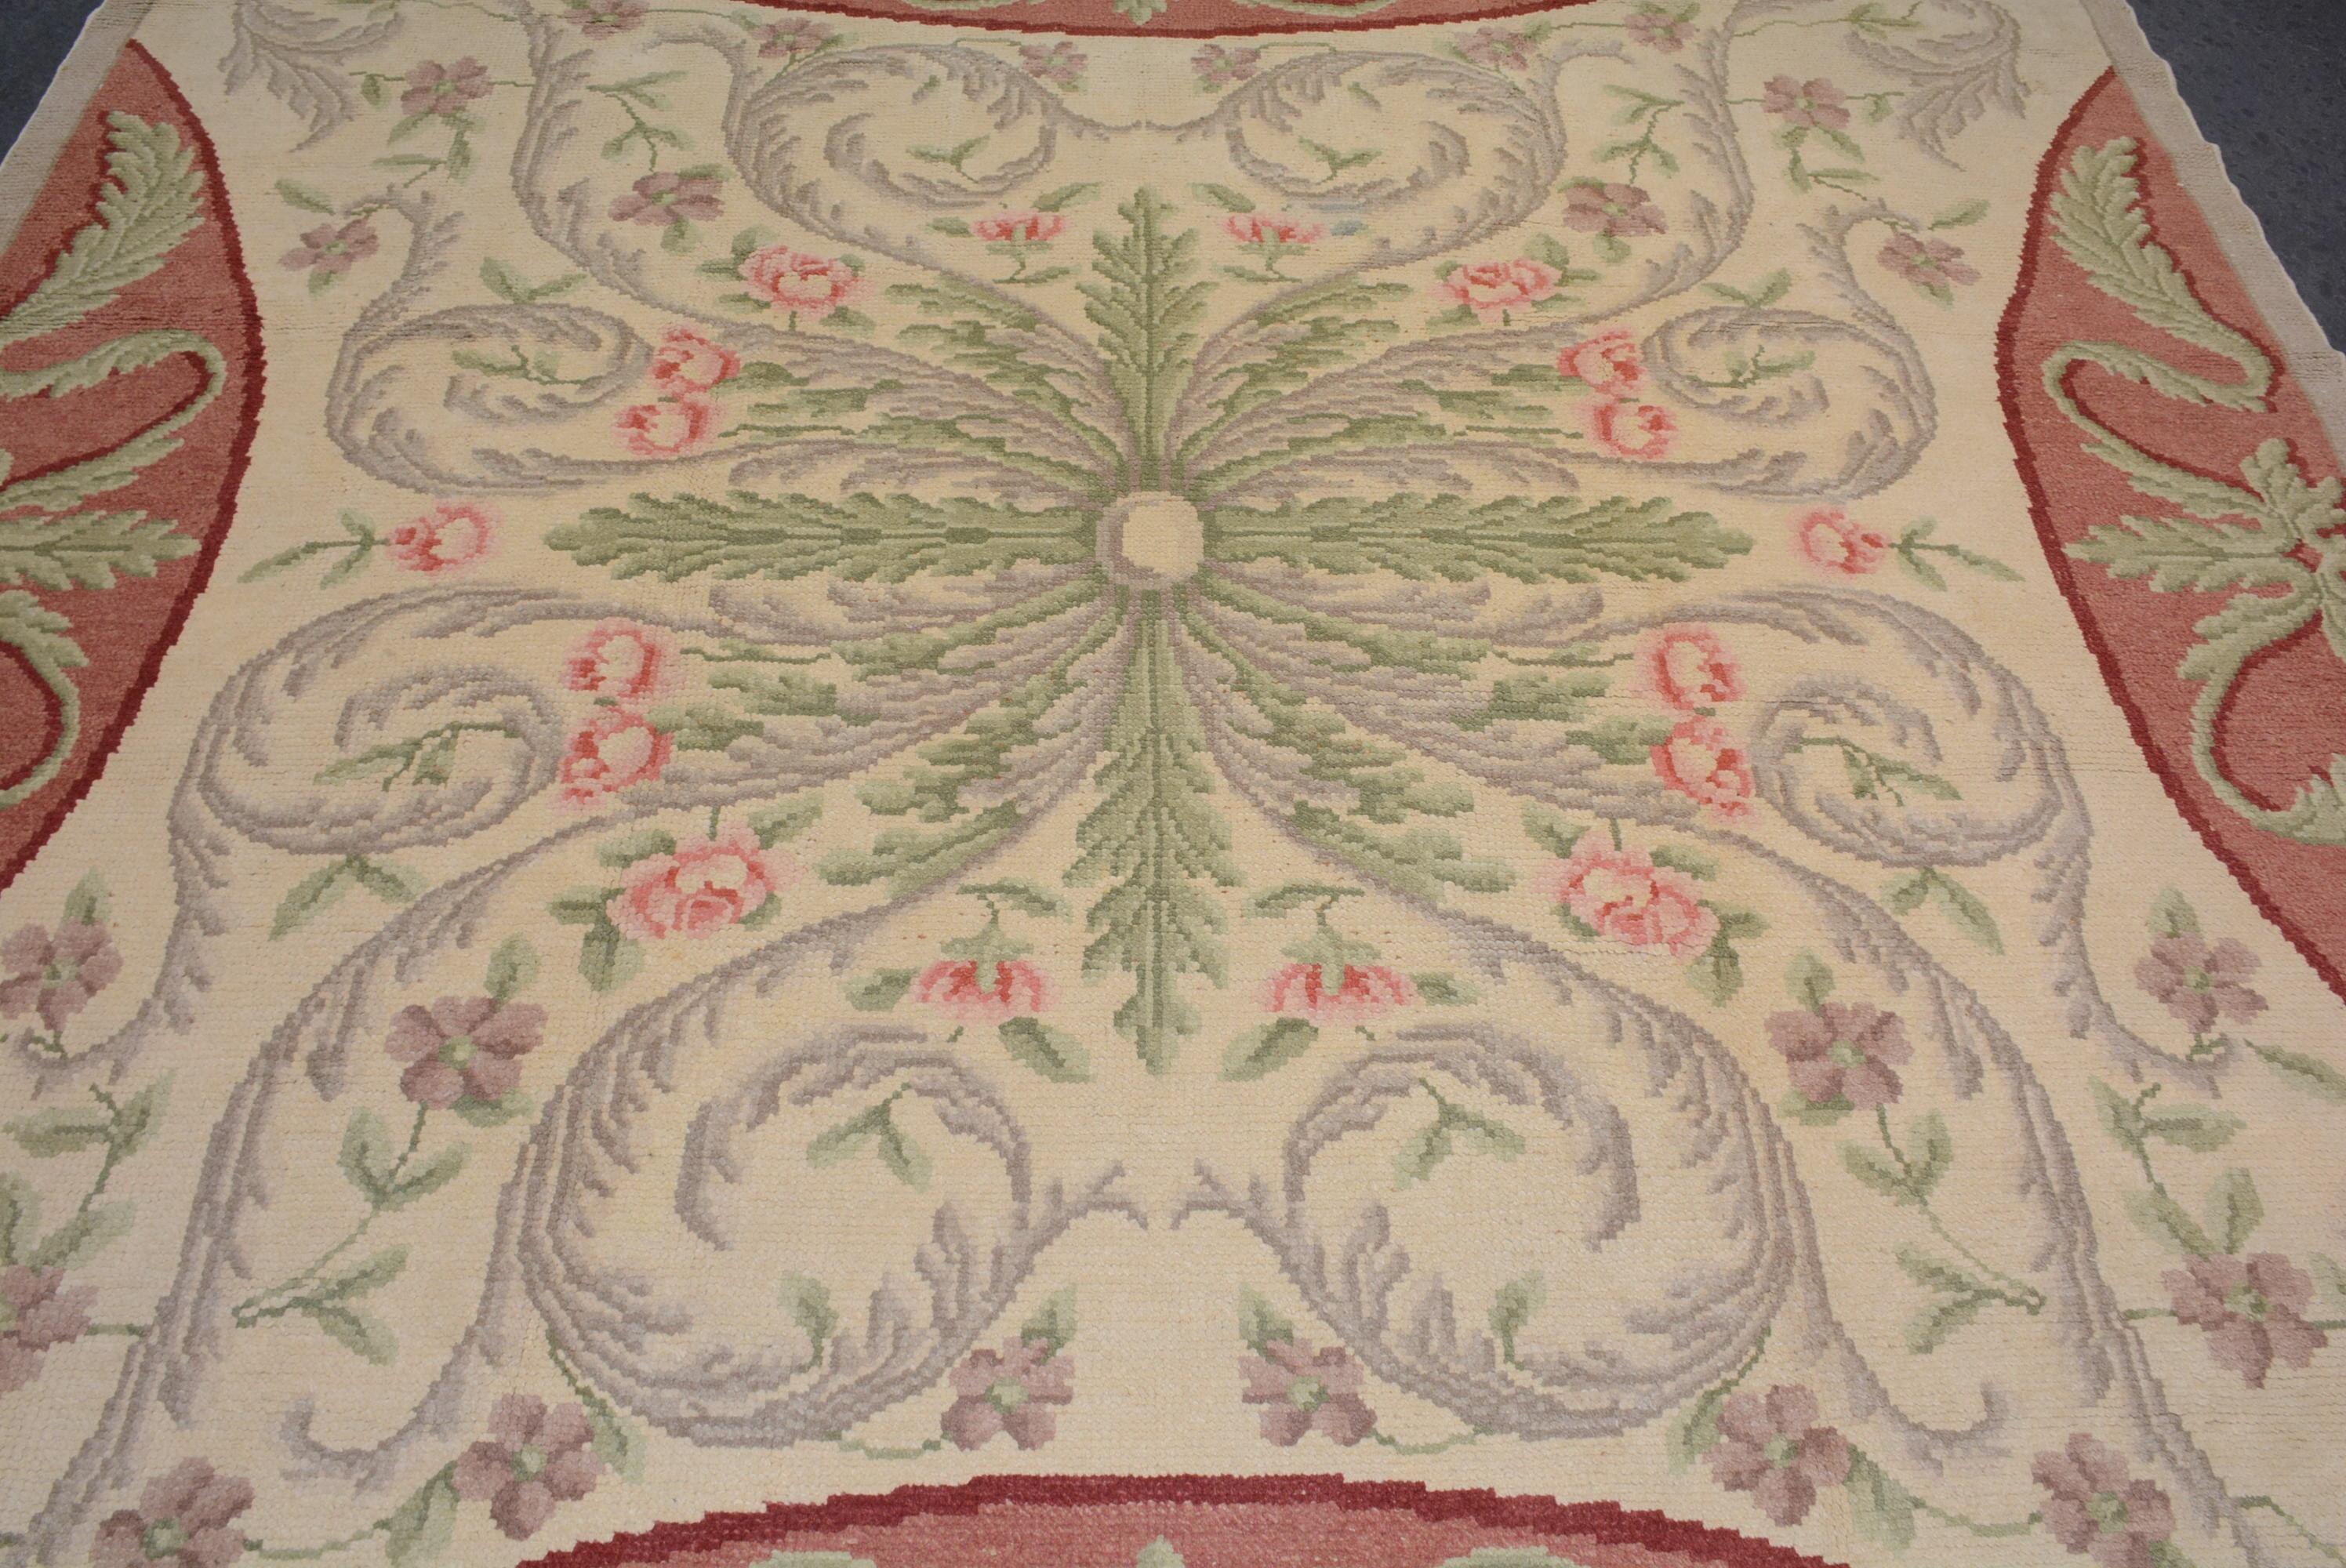 Sous la direction de Pierre Dupont et Simon Lourdet, la production de tapis a commencé en France au début du 17e siècle. En 1608, un atelier a été créé au Louvre, suivi par l'établissement d'une installation plus grande dans une ancienne usine de